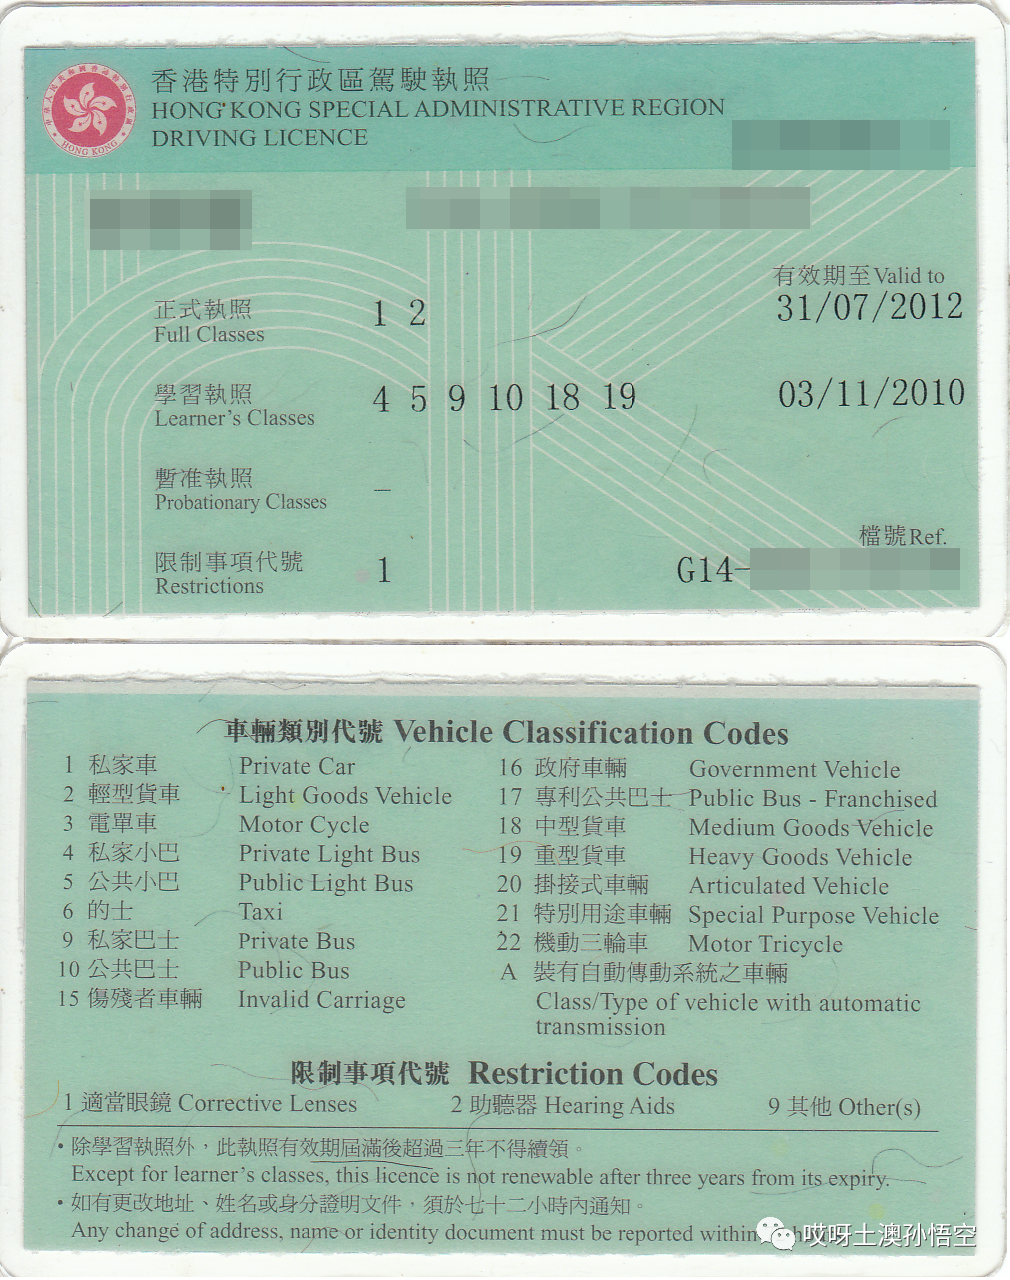 土澳墨尔本二手车购买攻略及香港驾照在澳使用说明